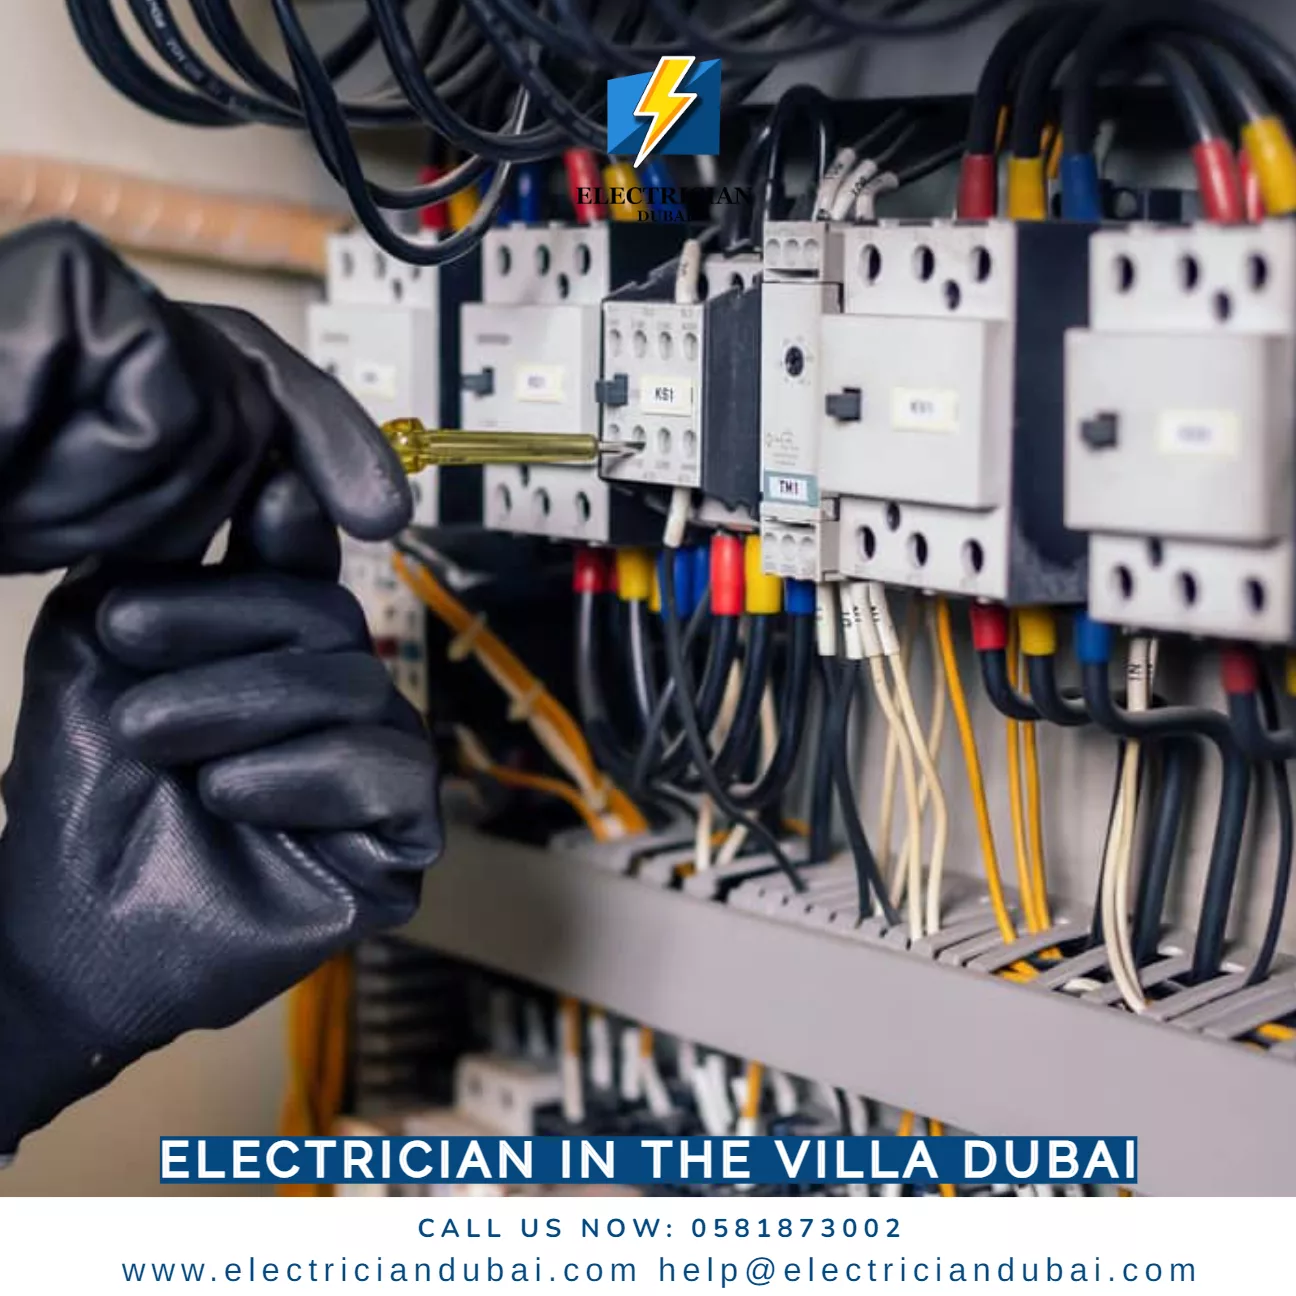 Cable Management Service Dubai - 0581873002, Electrician Dubai